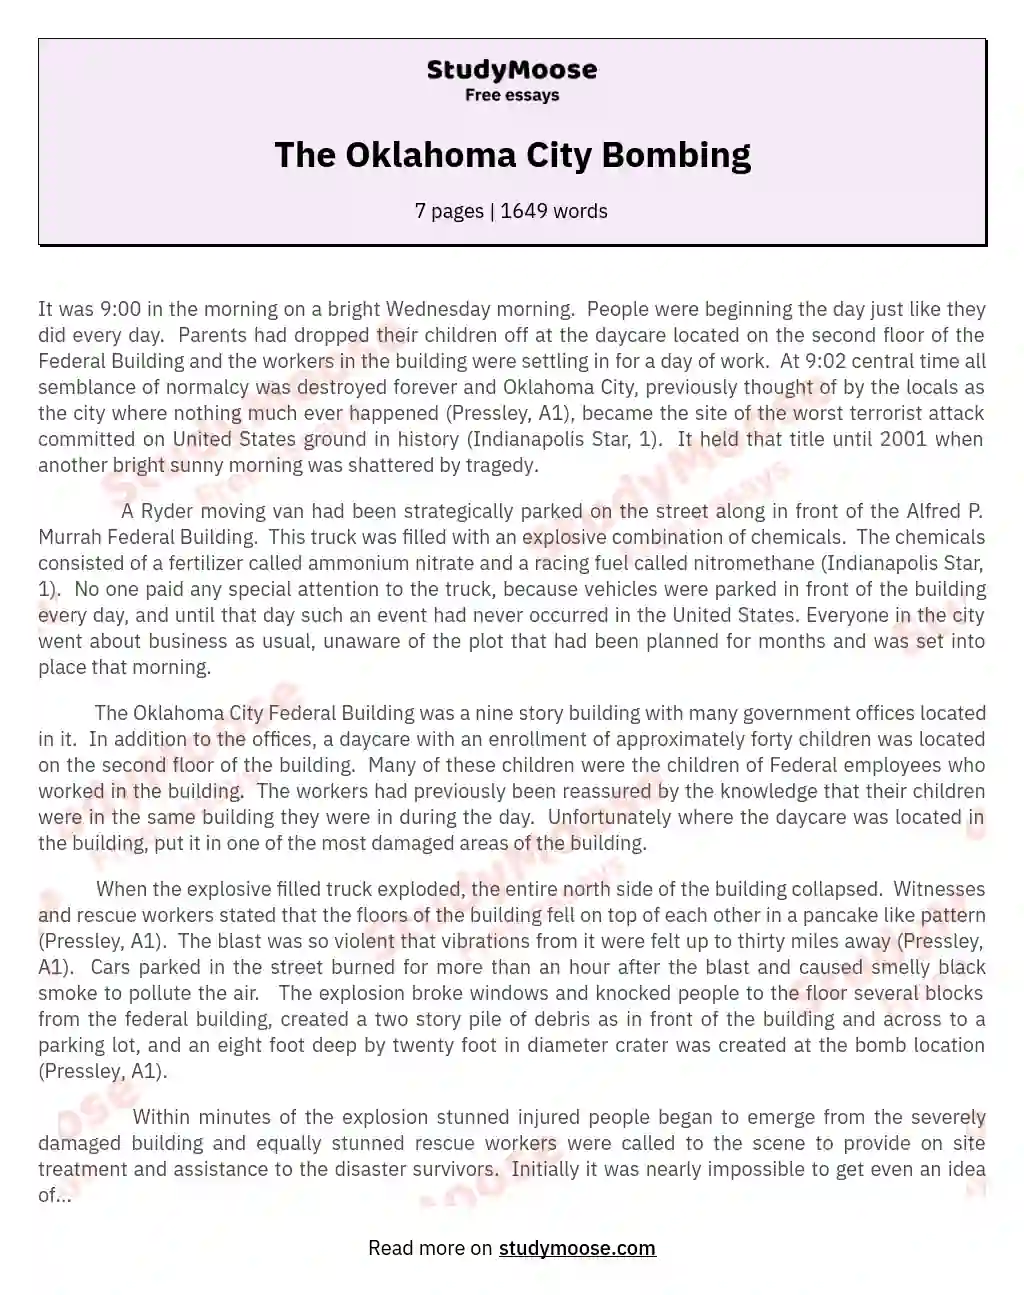 The Oklahoma City Bombing essay